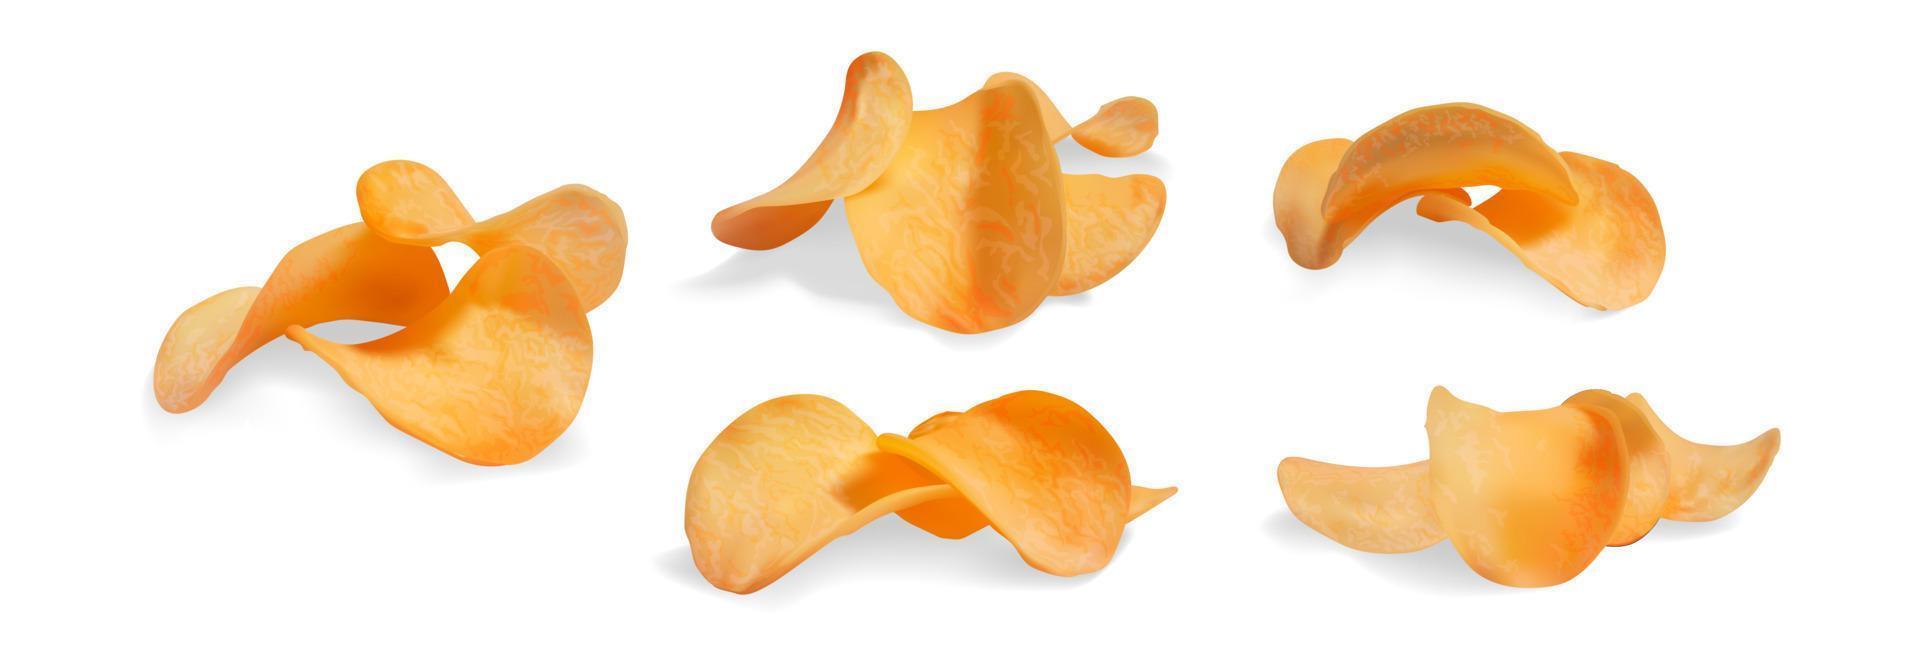 realista detallado 3d crujiente patata papas fritas colocar. vector